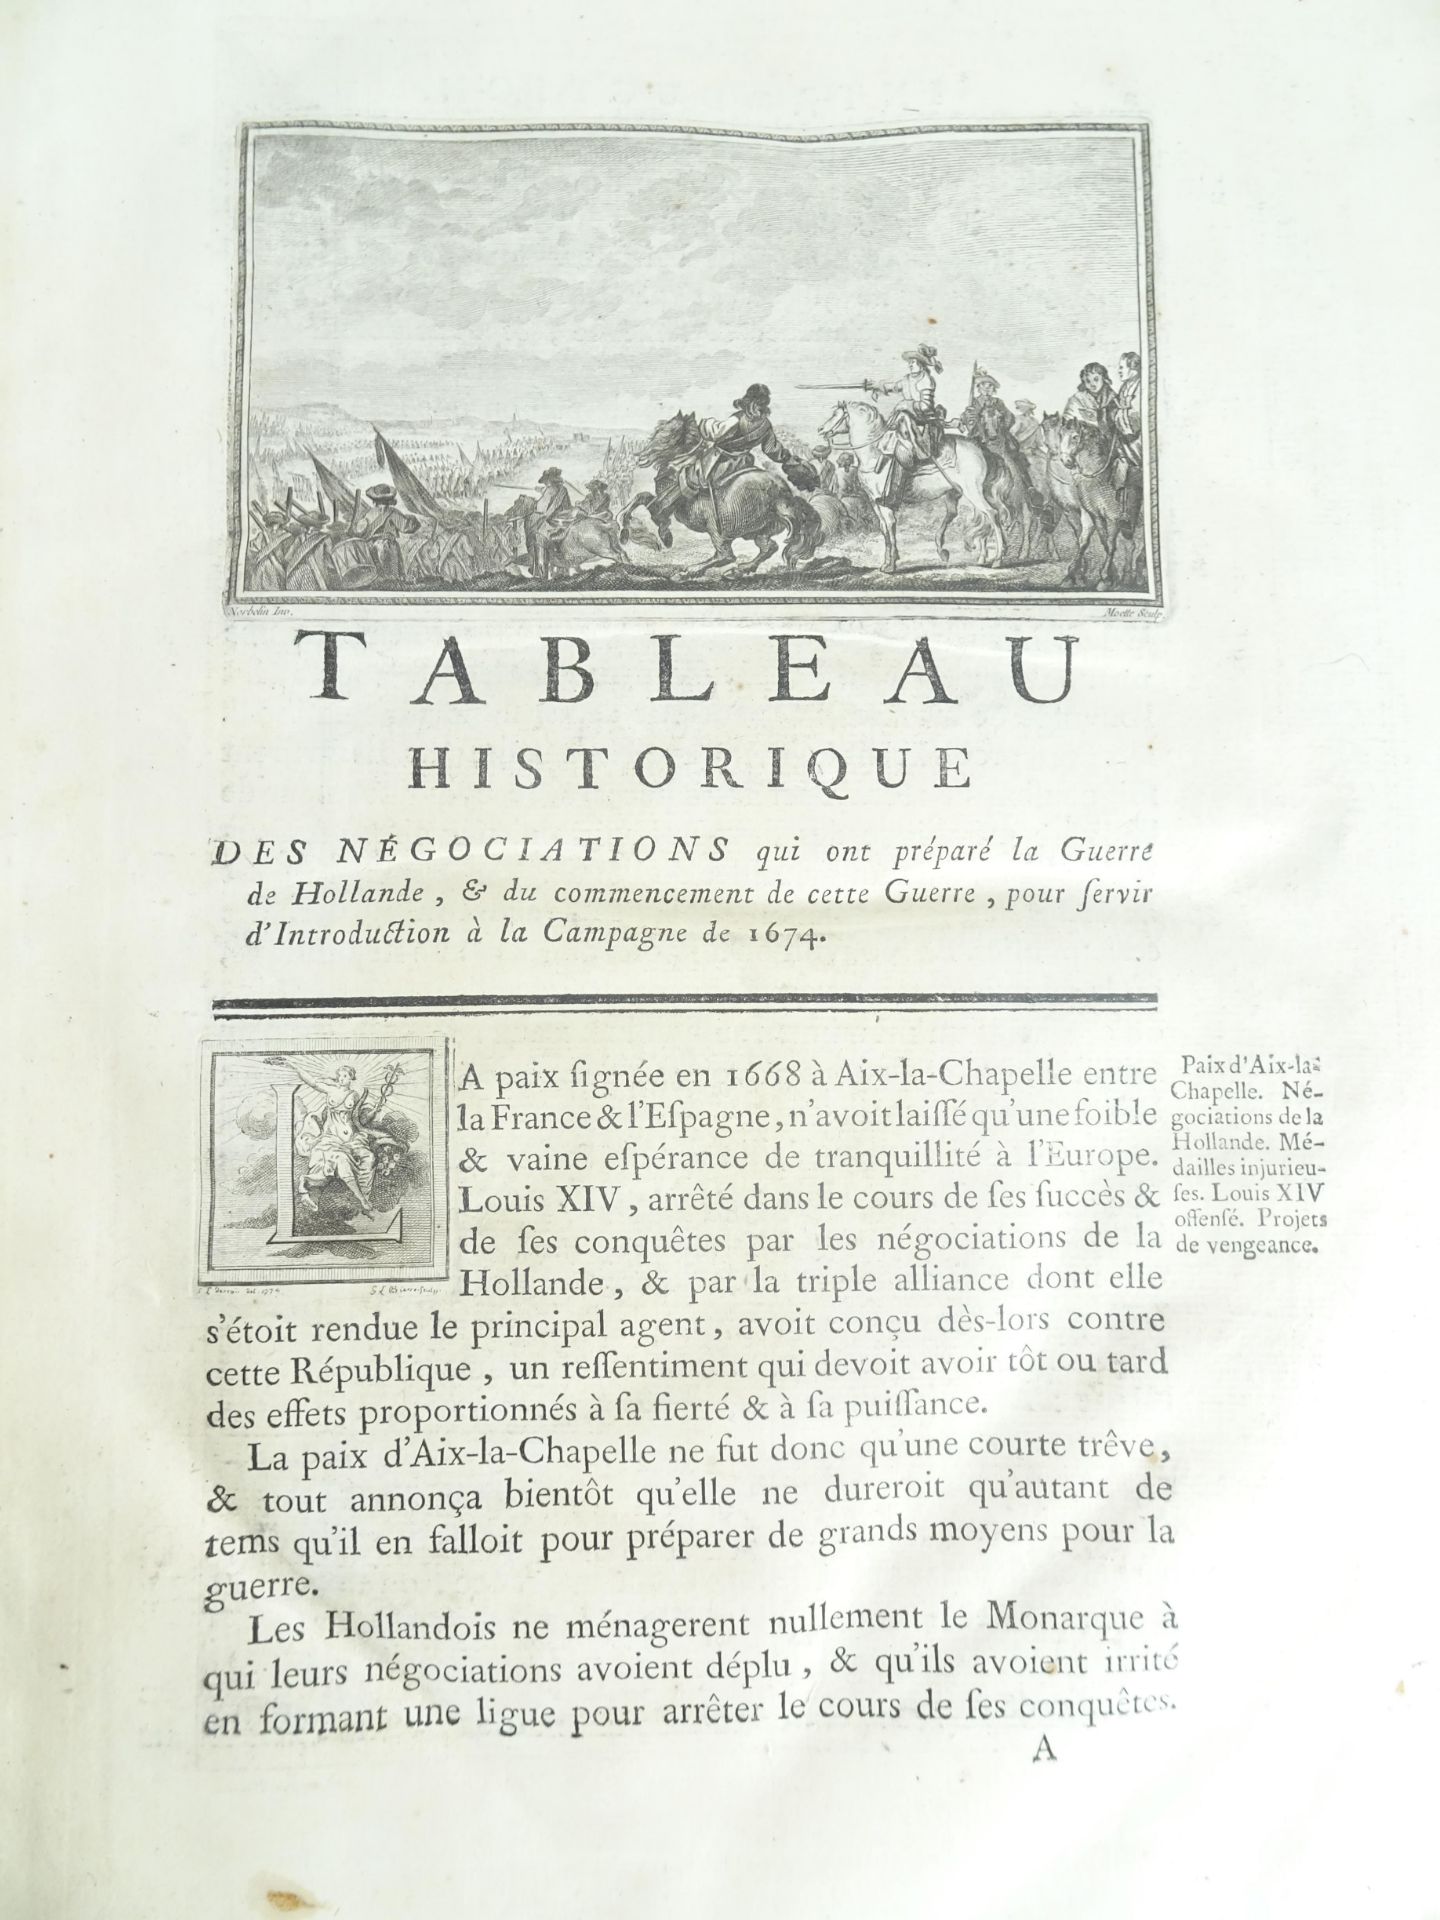 |Histoire Militaire| Chevalier de Beaurain, Histoire de la Campagne de 1674 en Flandre précédé d' - Image 5 of 19